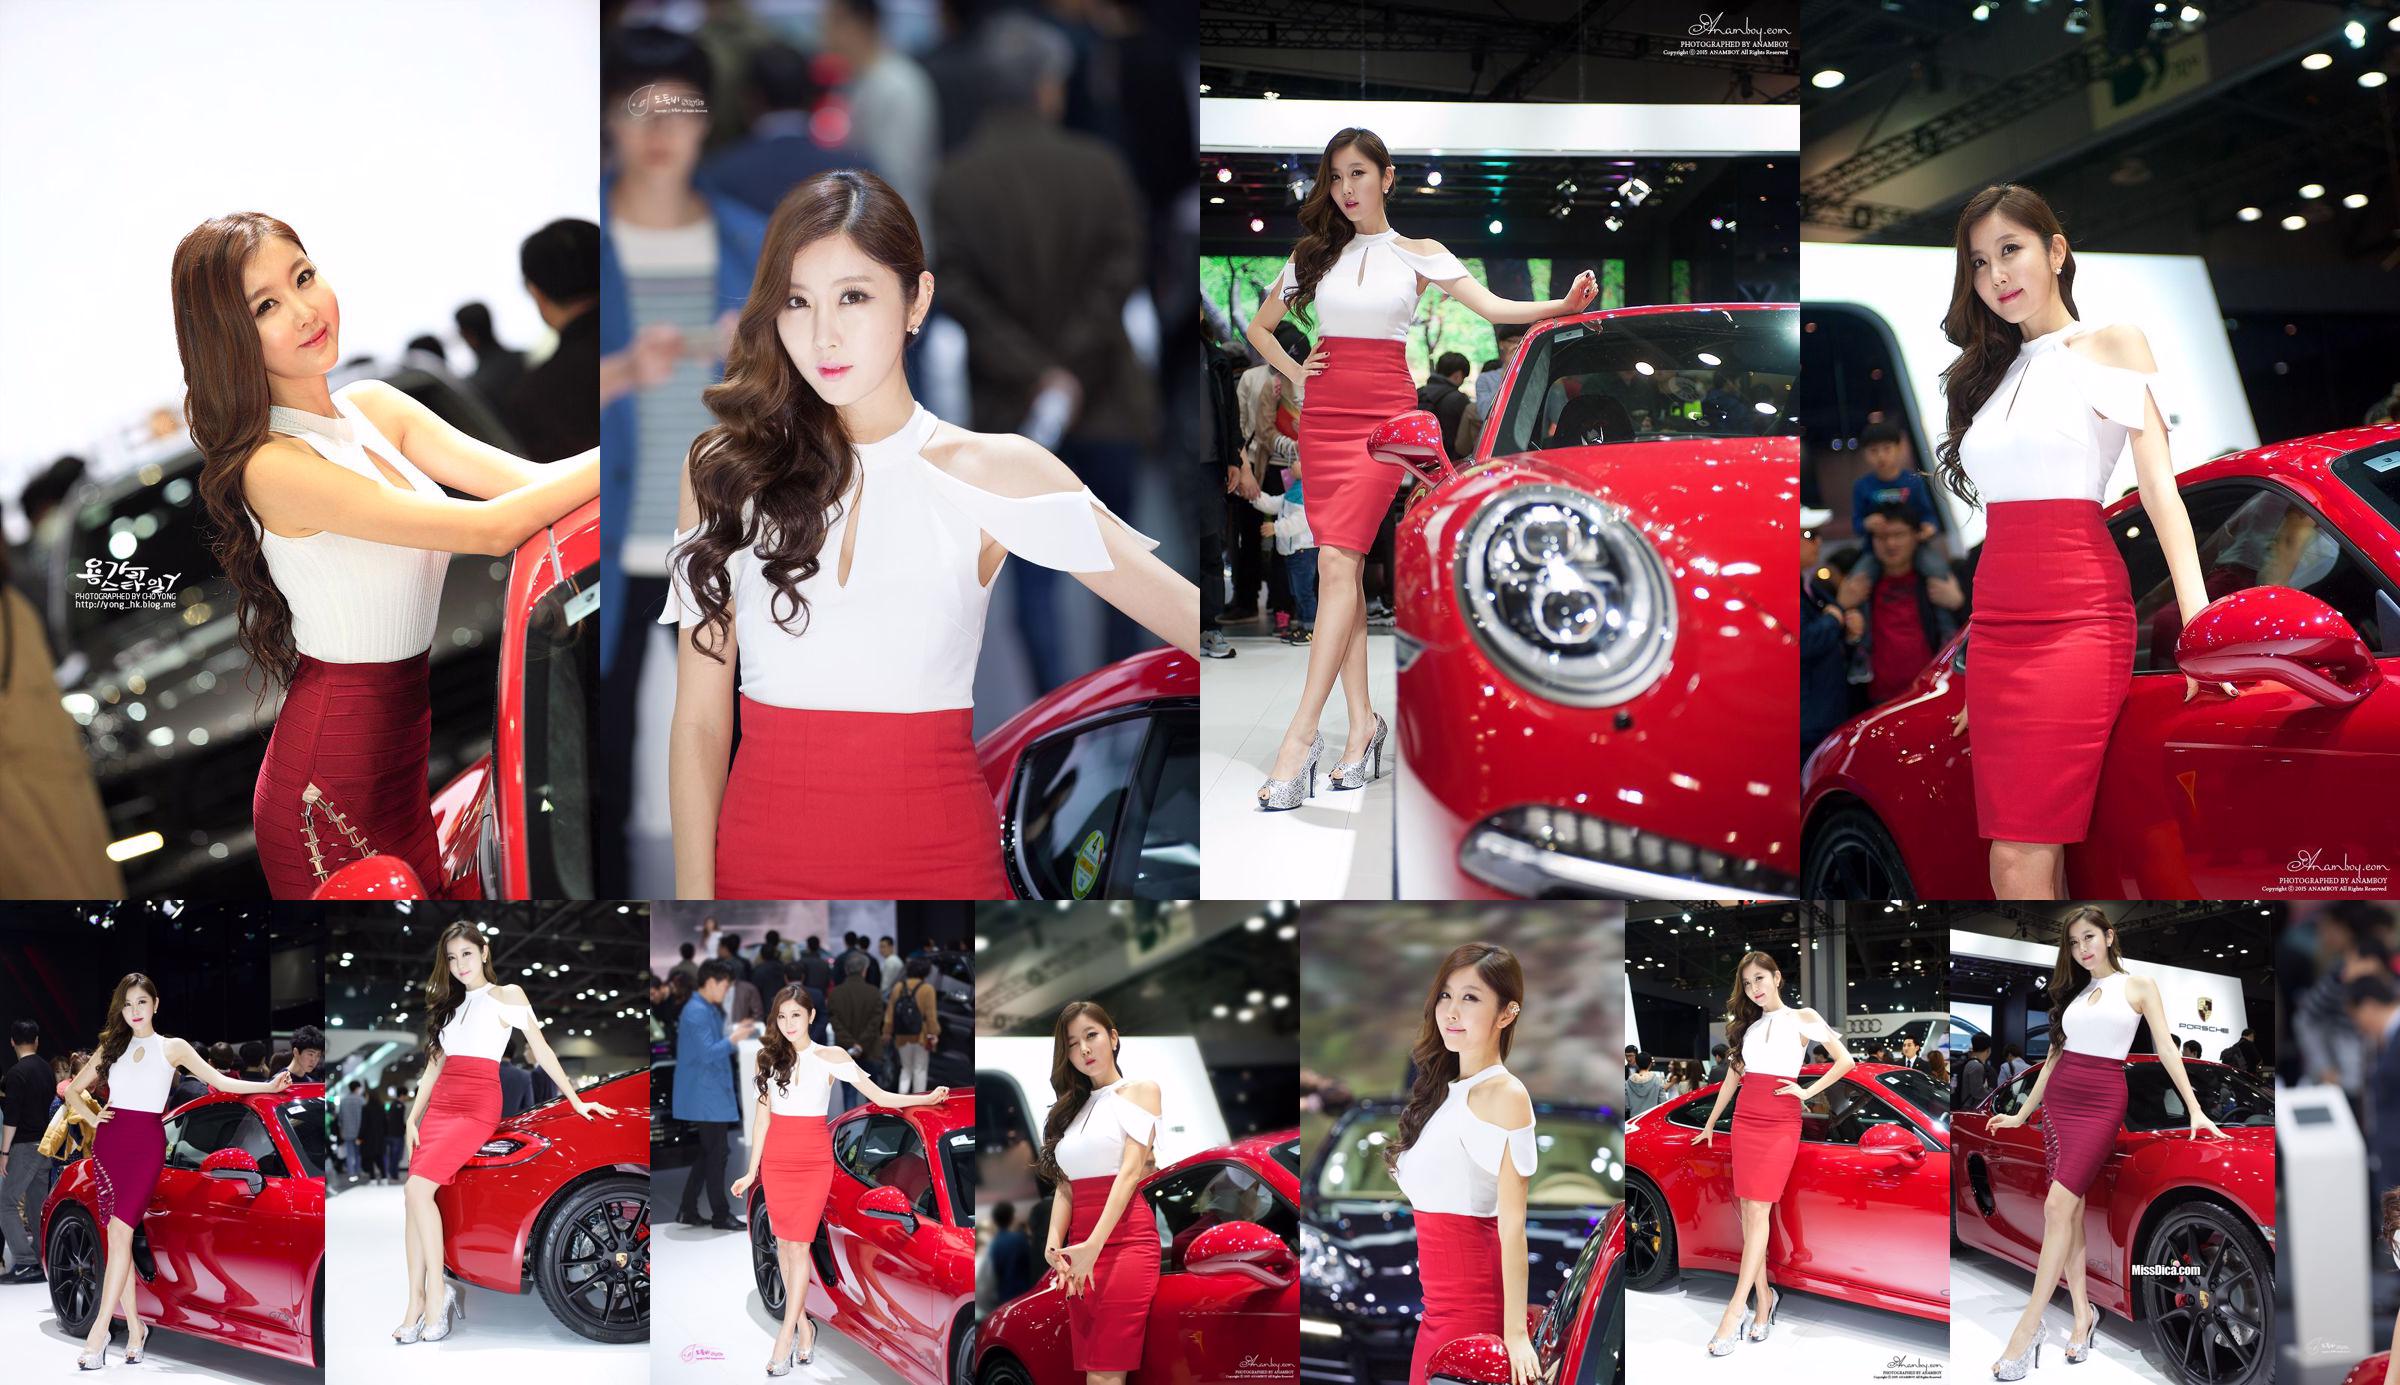 Colección de fotos del modelo de automóvil coreano Cui Xingya / Cui Xinger "Serie de faldas rojas en el Auto Show" No.ee7d91 Página 1